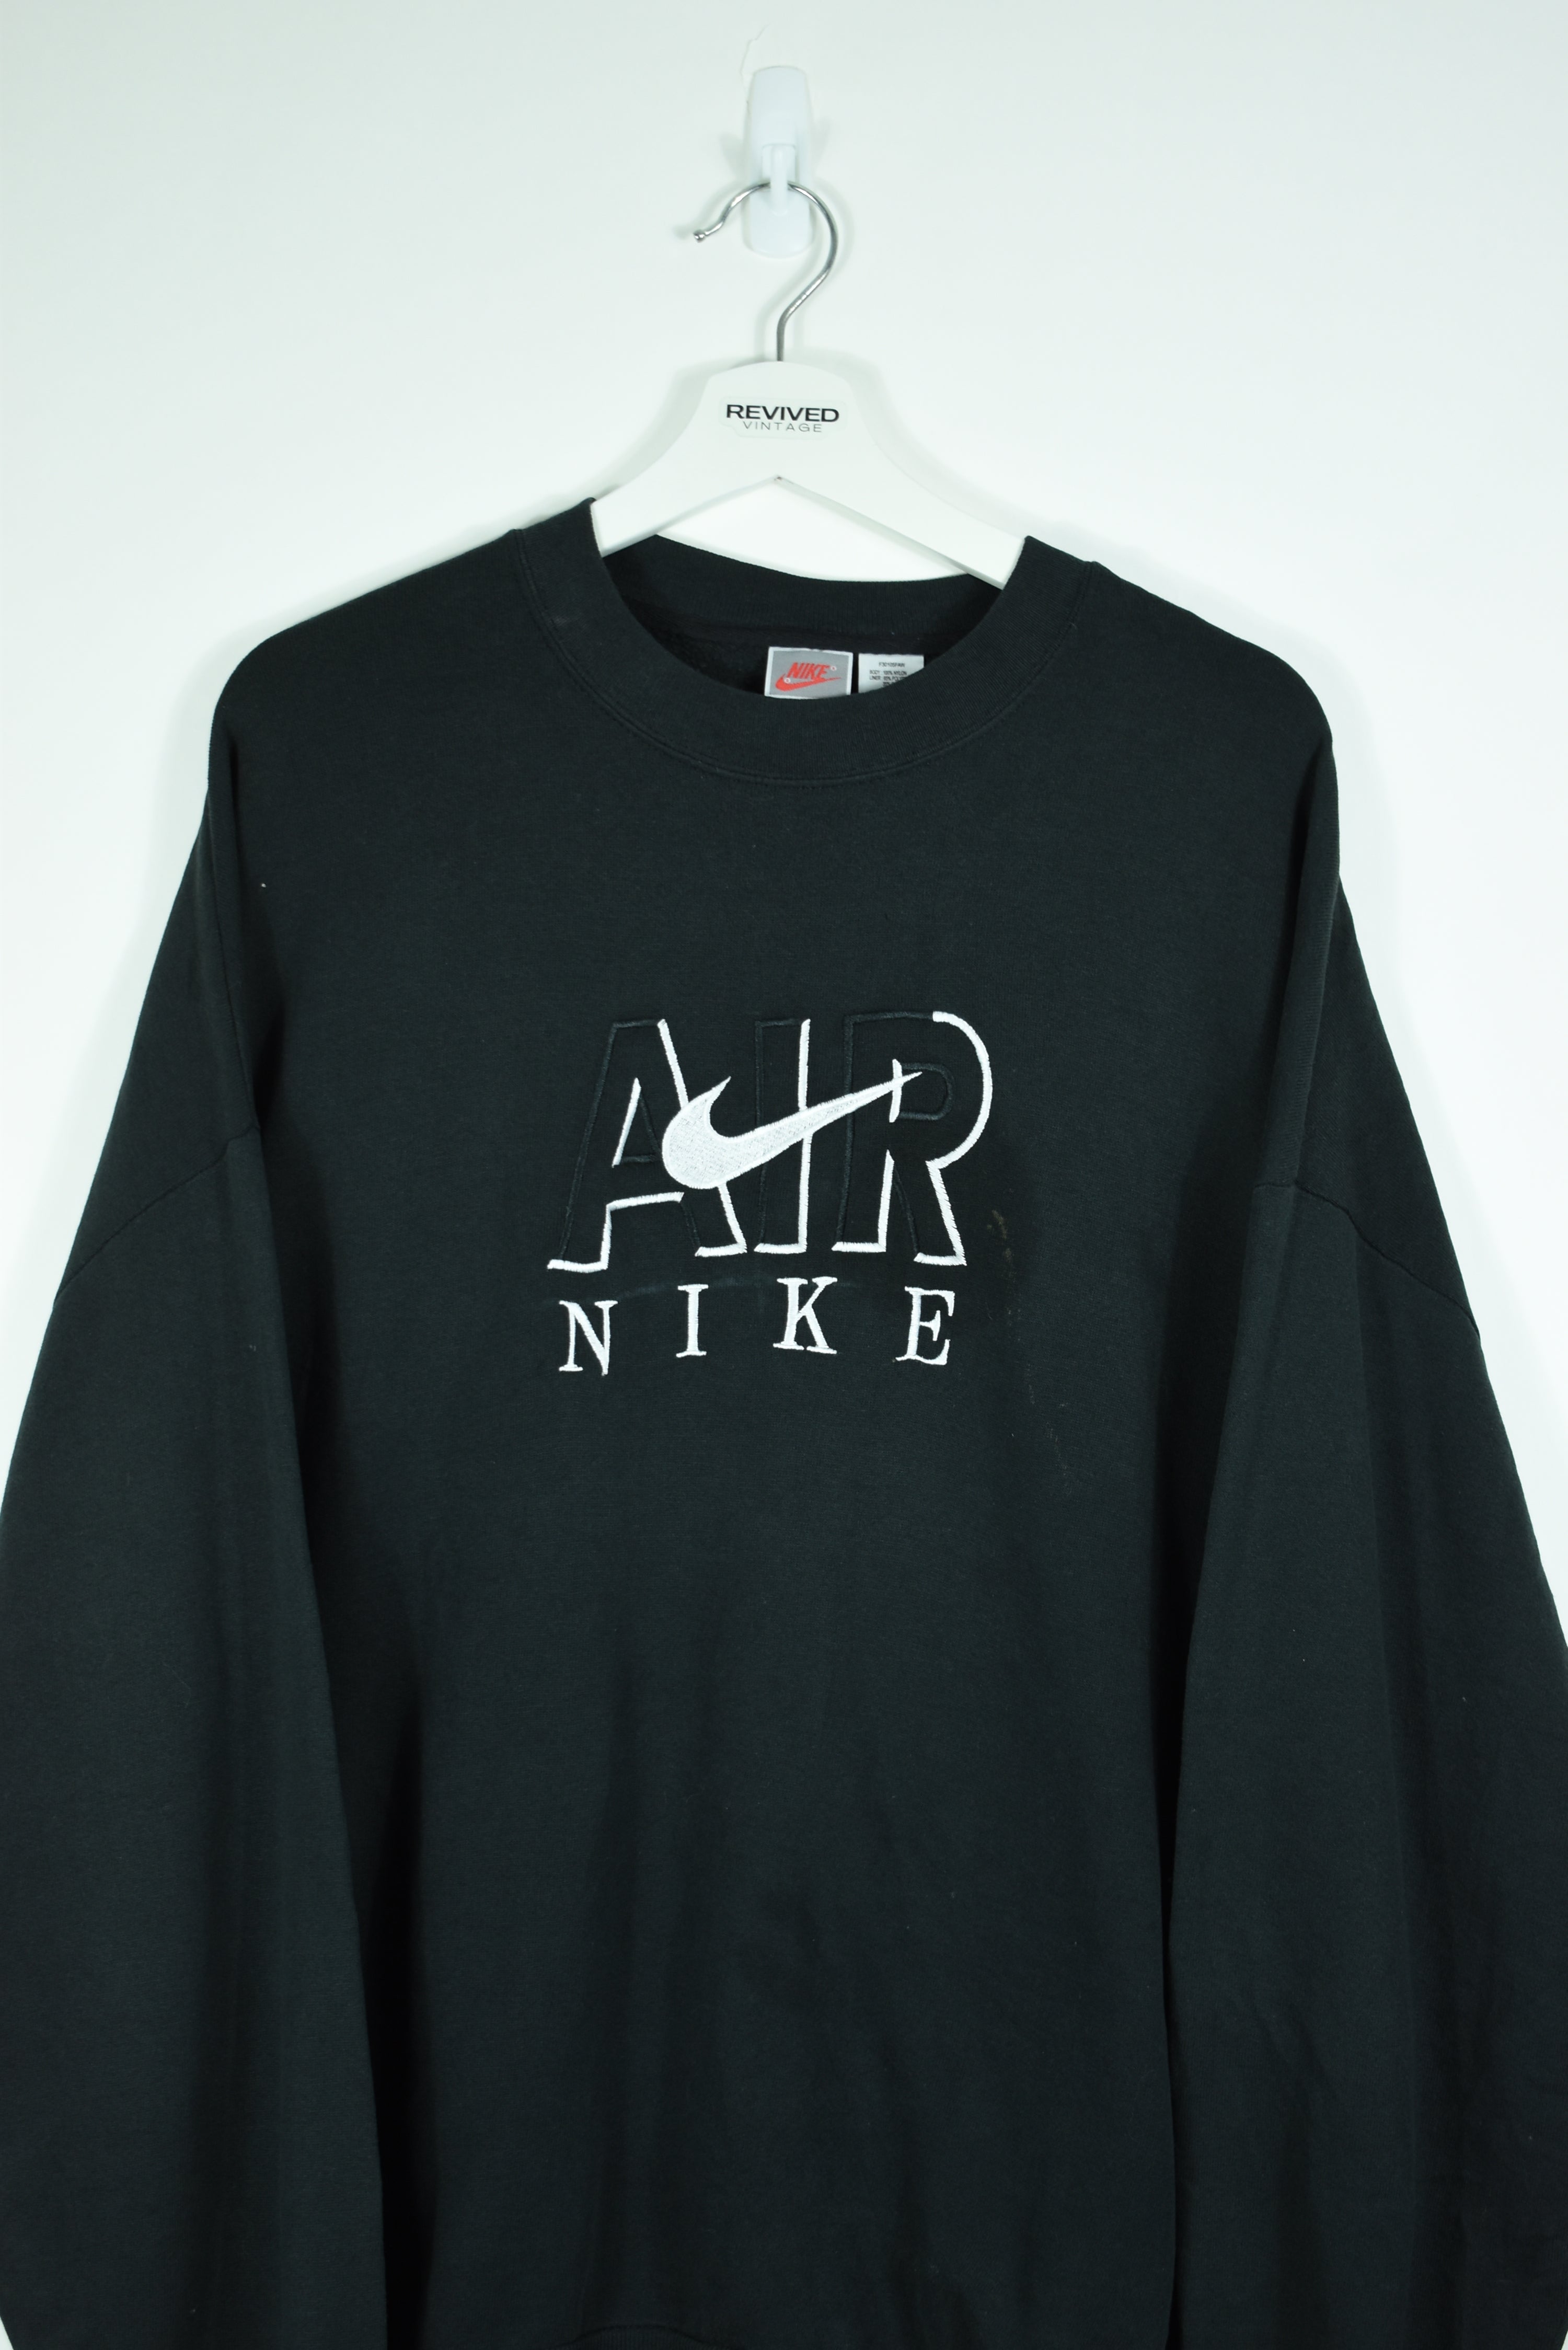 Vintage Nike Air Black Embroidery Bootleg Sweatshirt Xlarge